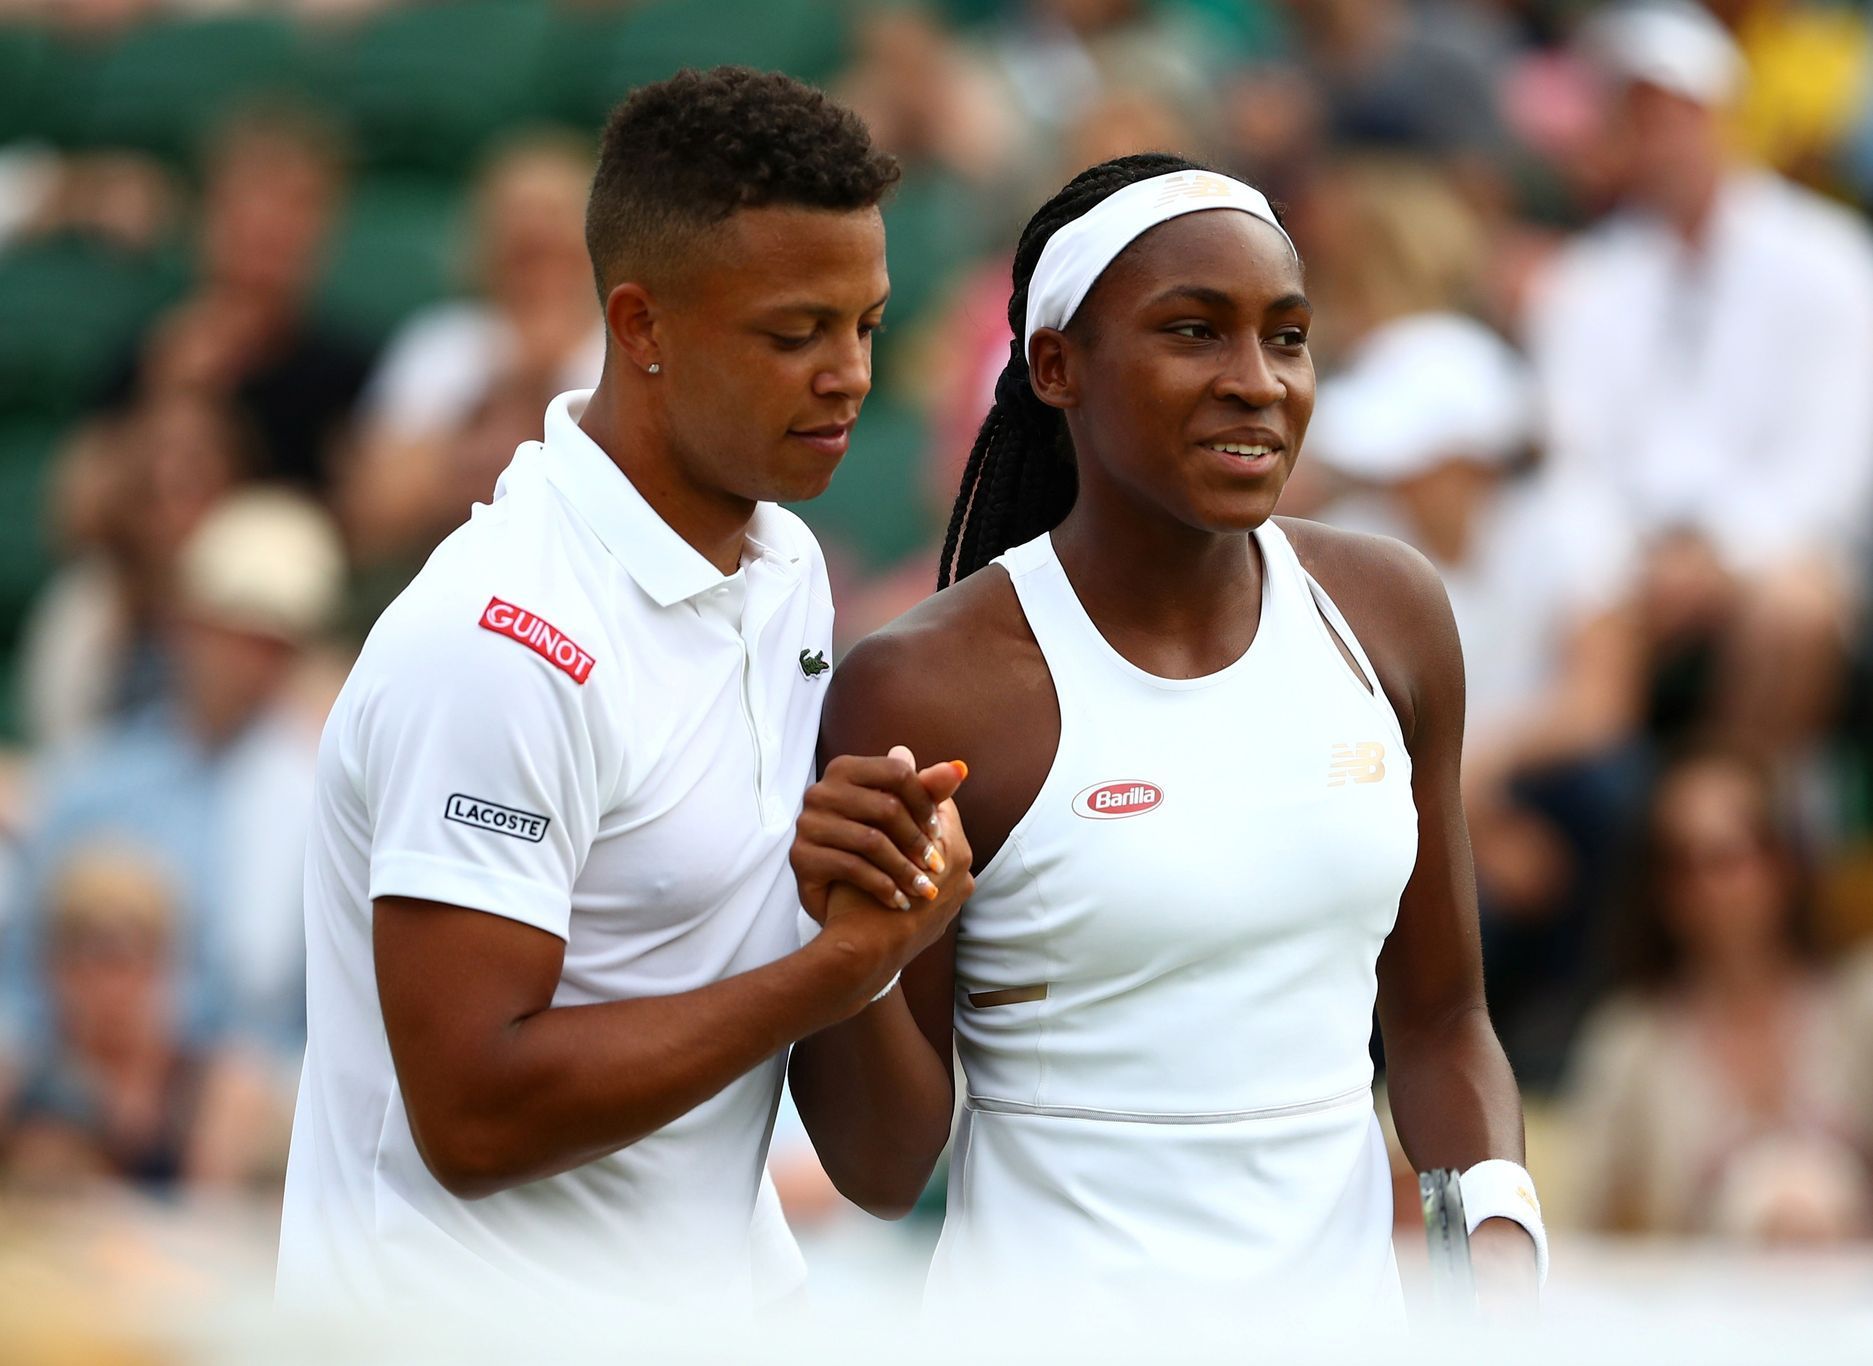 Jay Clarke a Coco Gauffová, Wimbledon 2019